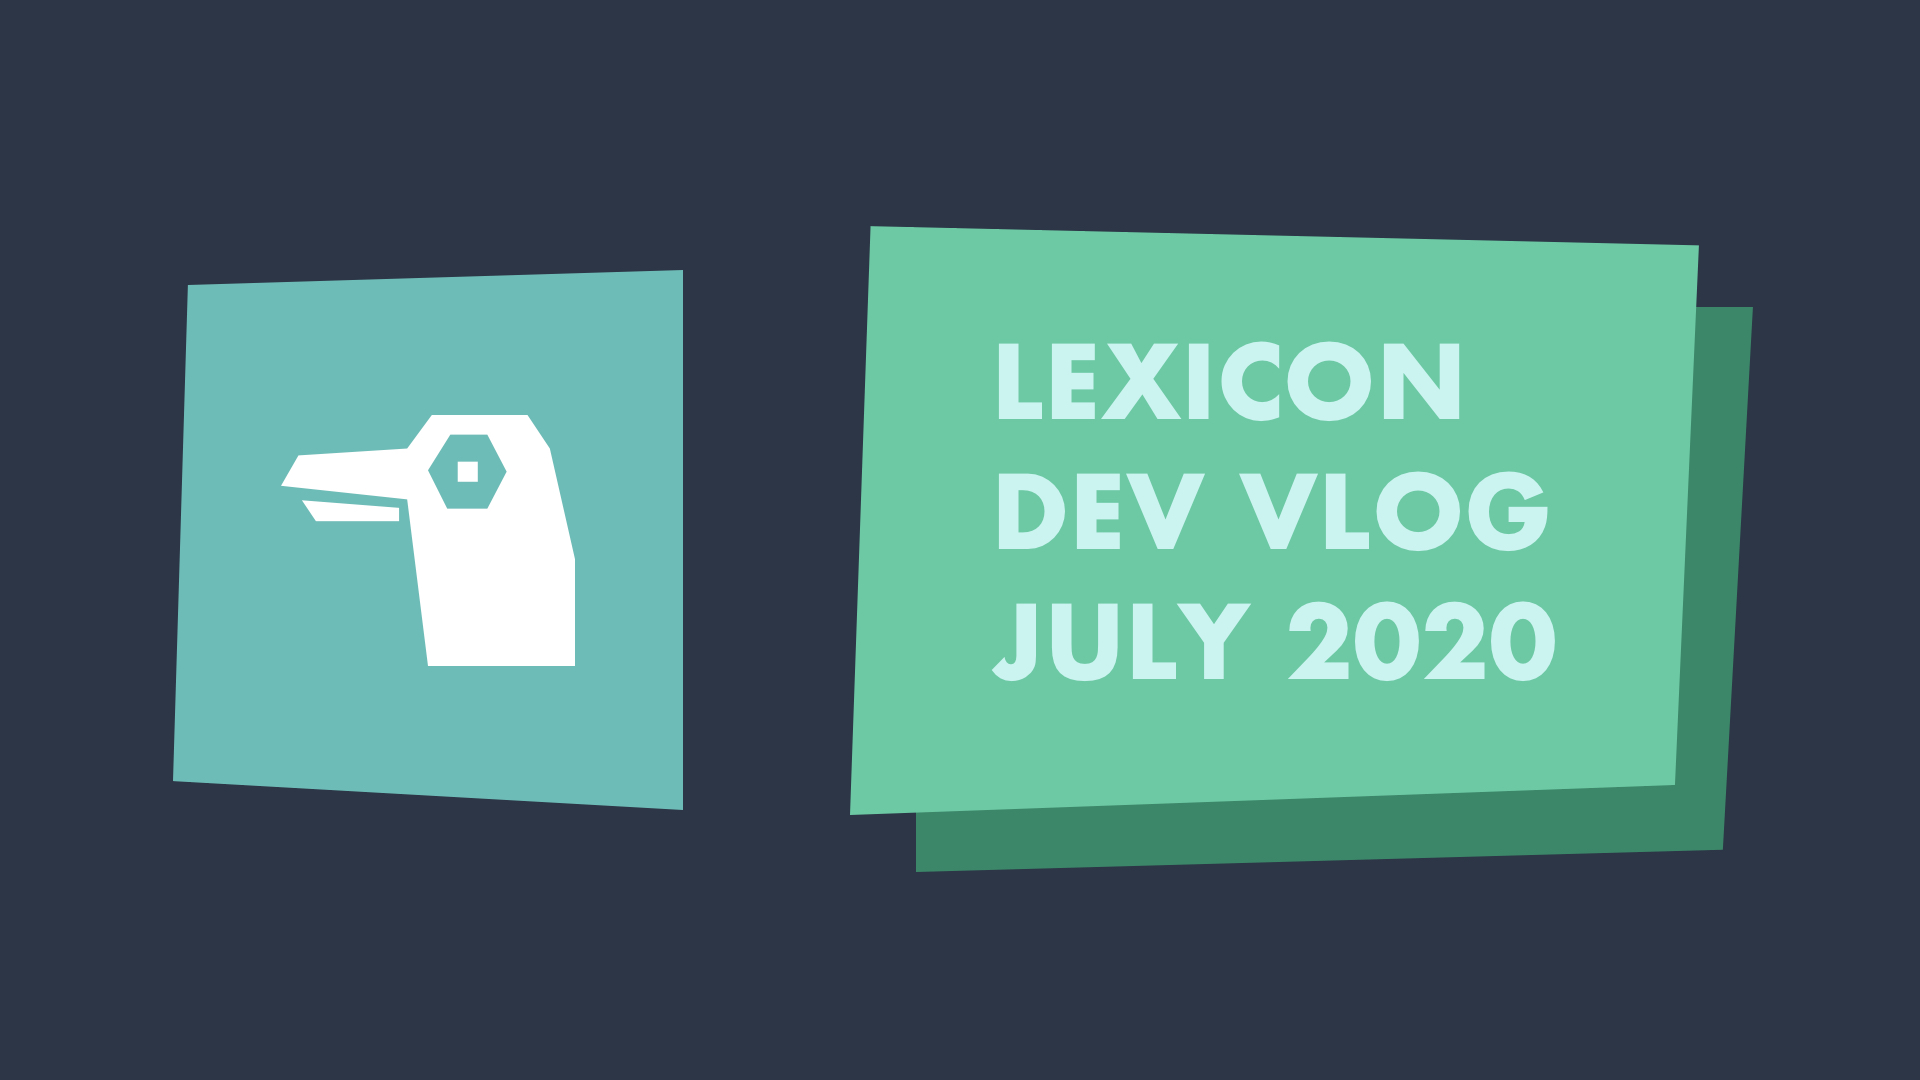 Lexicon Dev Vlog July 2020